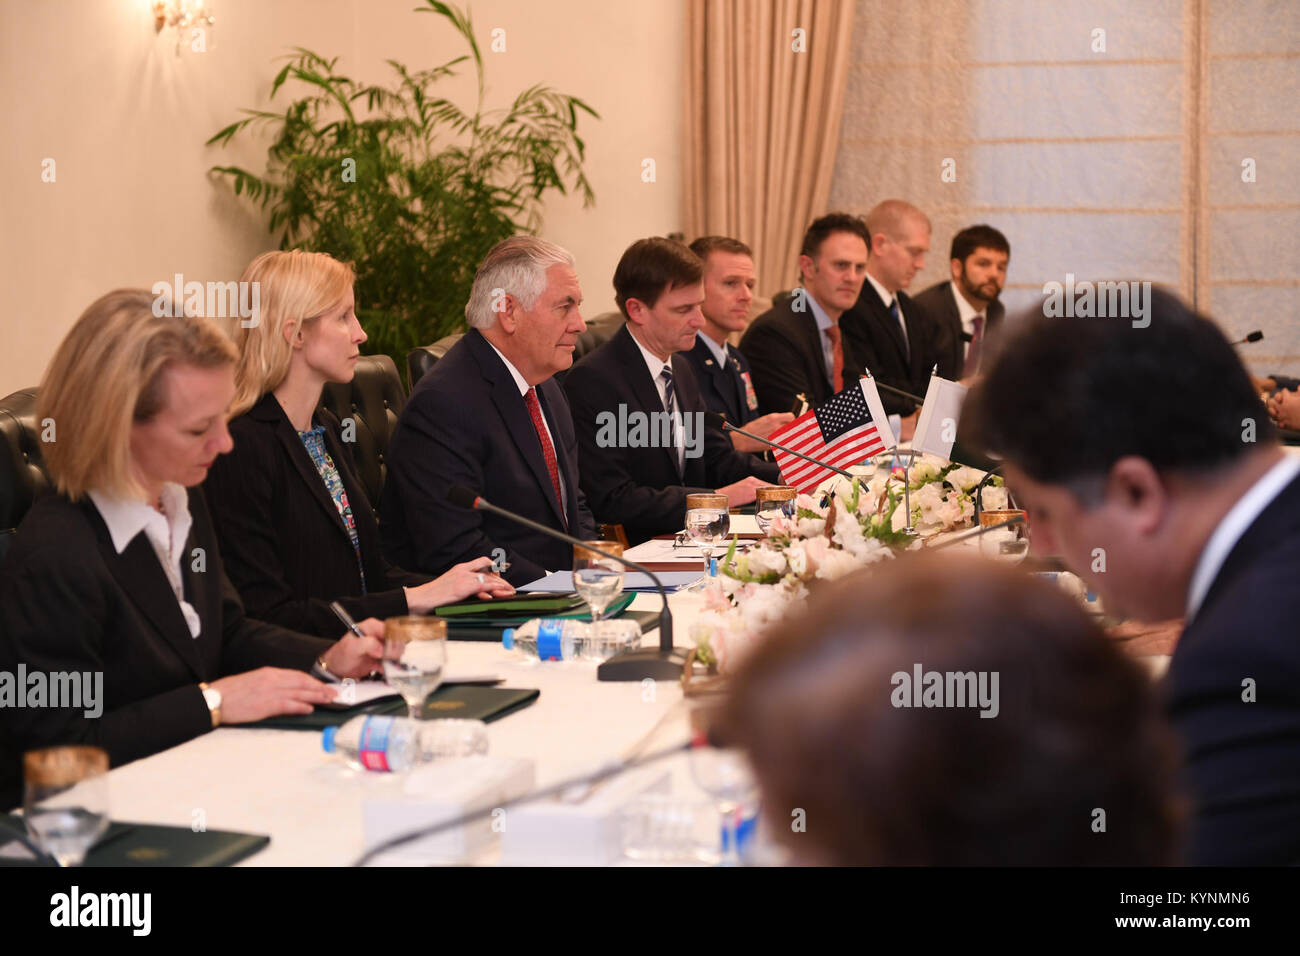 El Secretario de Estado de Estados Unidos, Tillerson, flanqueado por su delegación participar en una reunión bilateral con el Primer Ministro paquistaní Shahid Khaqan Abbasi y los representantes del Gobierno pakistaní en la casa del Primer Ministro en Islamabad, Pakistán, 24 de octubre de 2017. Foto de stock